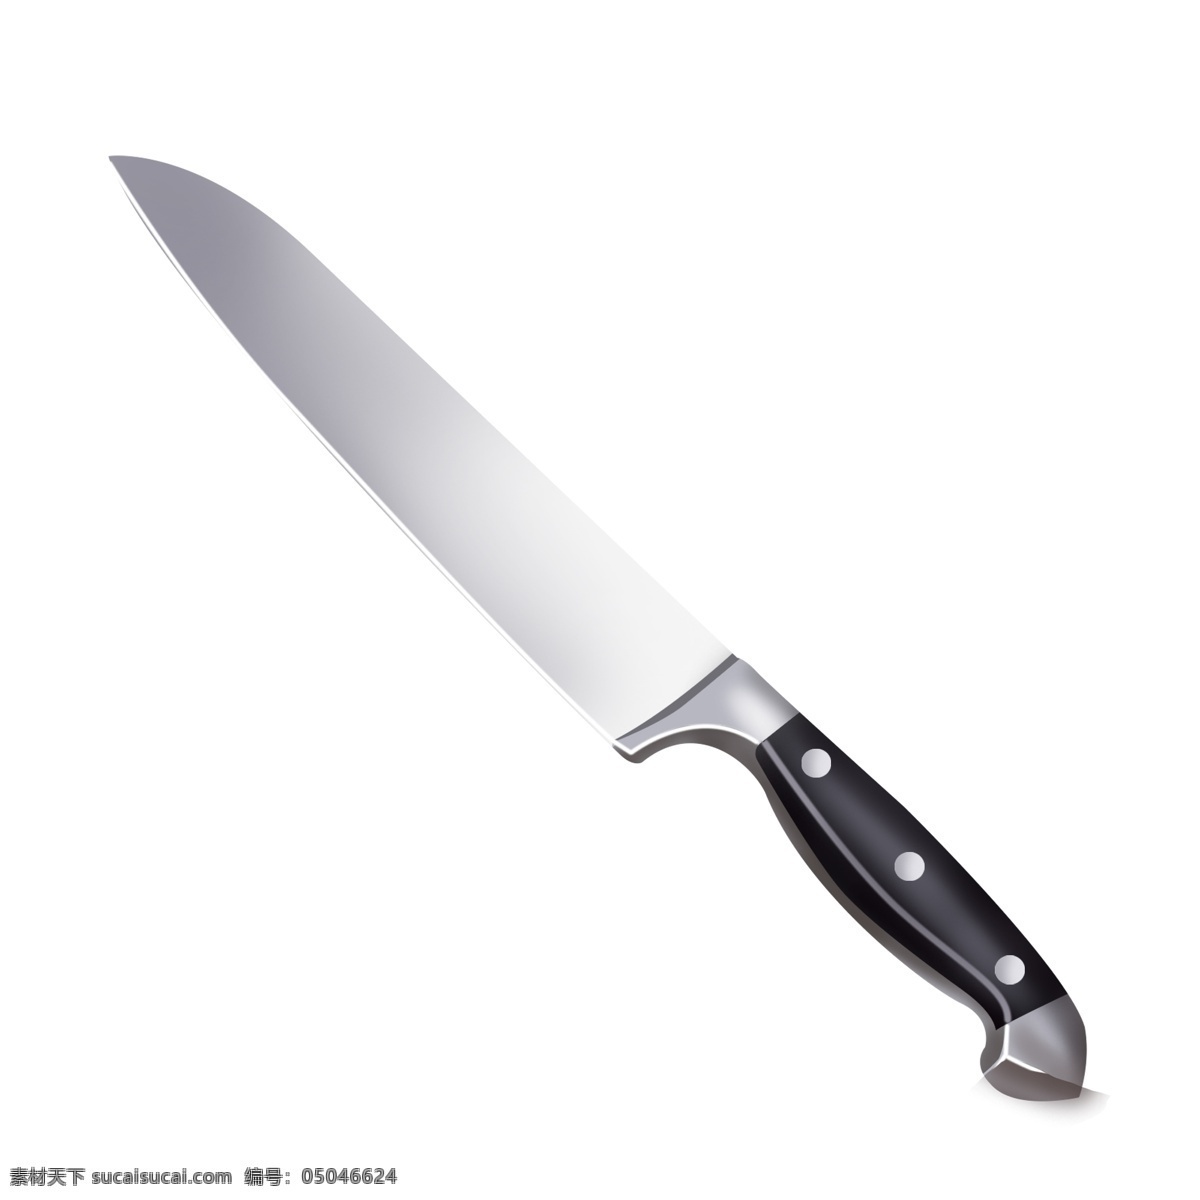 银色 家用 精致 菜刀 透明 底 厨具 烹饪煮菜用品 厨房用具 厨房用品 插画插图 灰色 锋利 锋利的刀